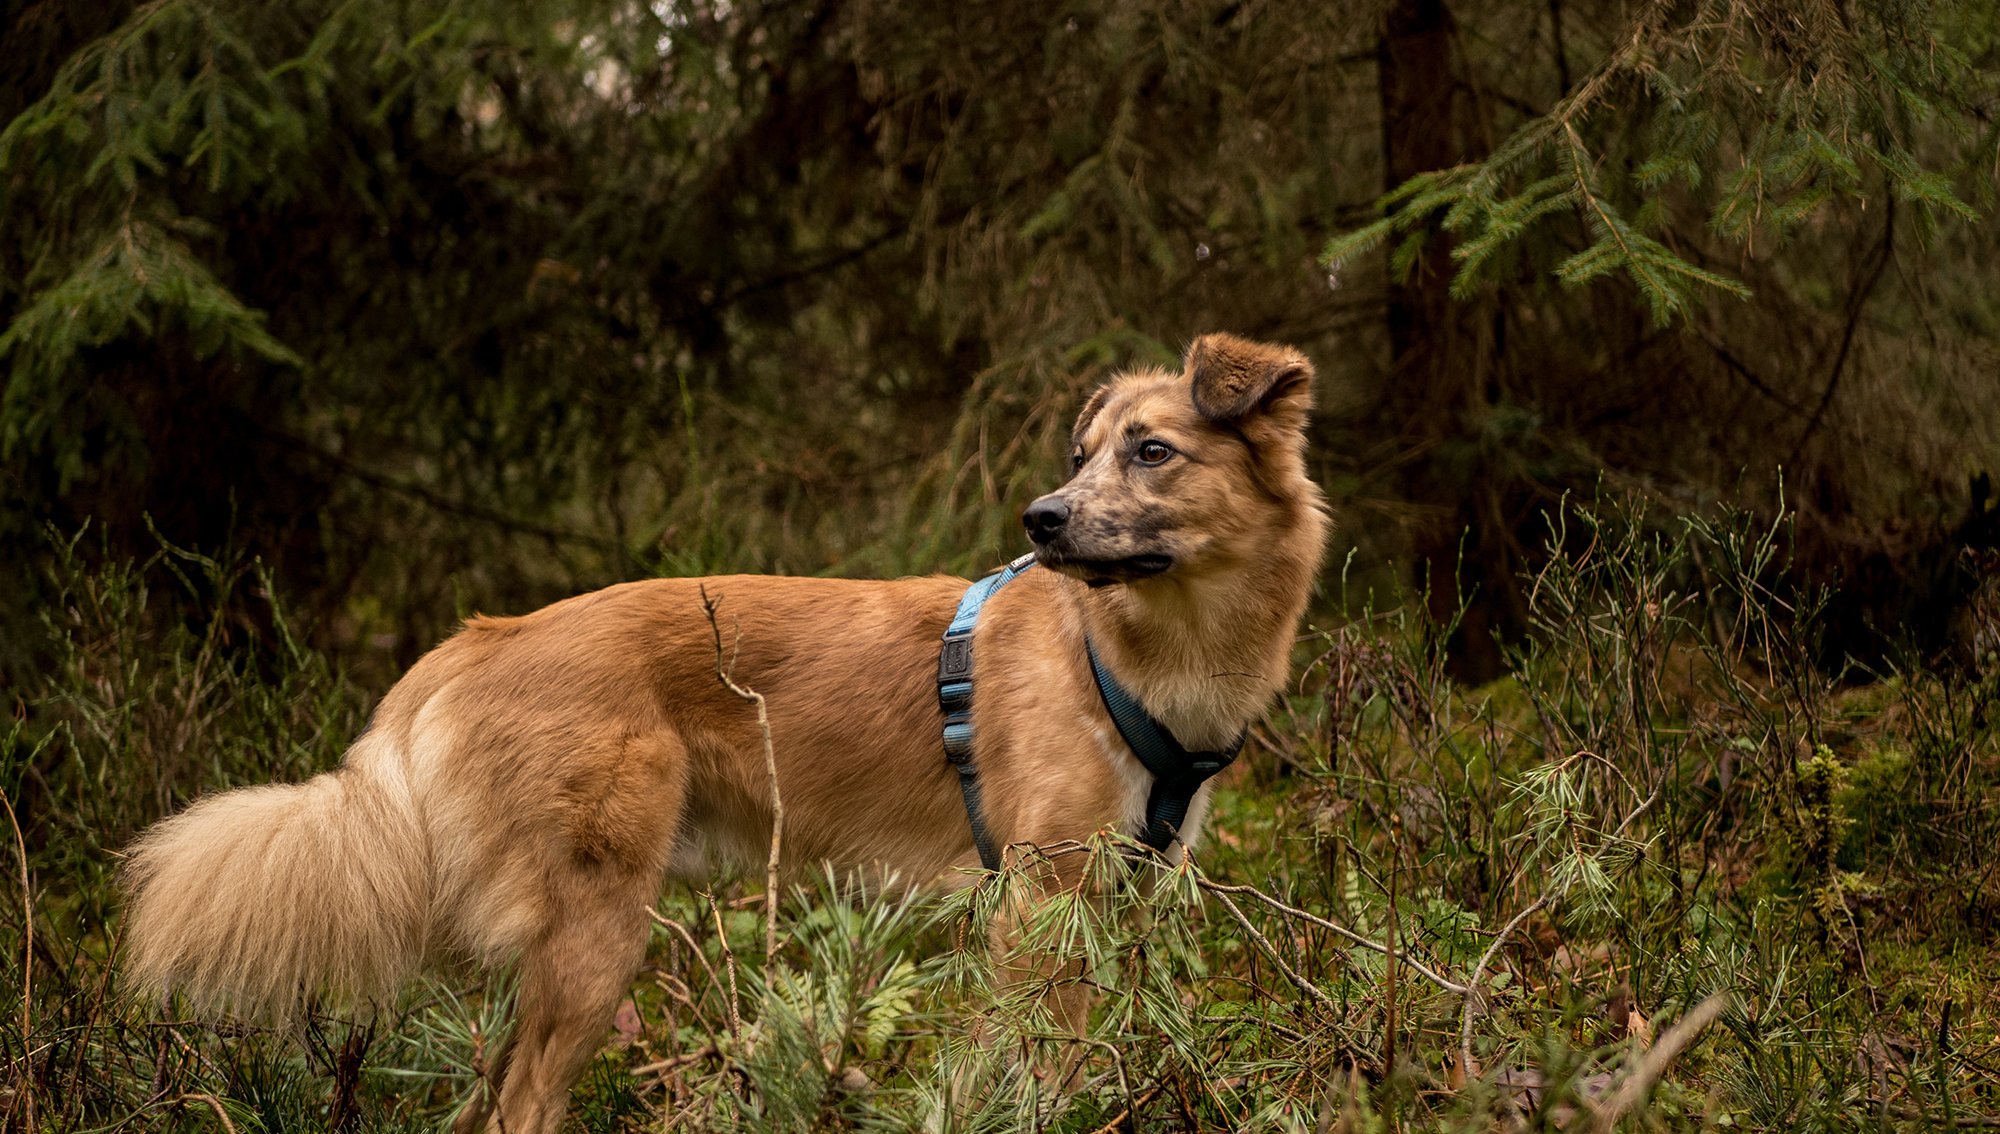 A nemzeti parkban tilos póráz nélkül sétáltatni a kutyákat, ám ezt sokan nem tartották be